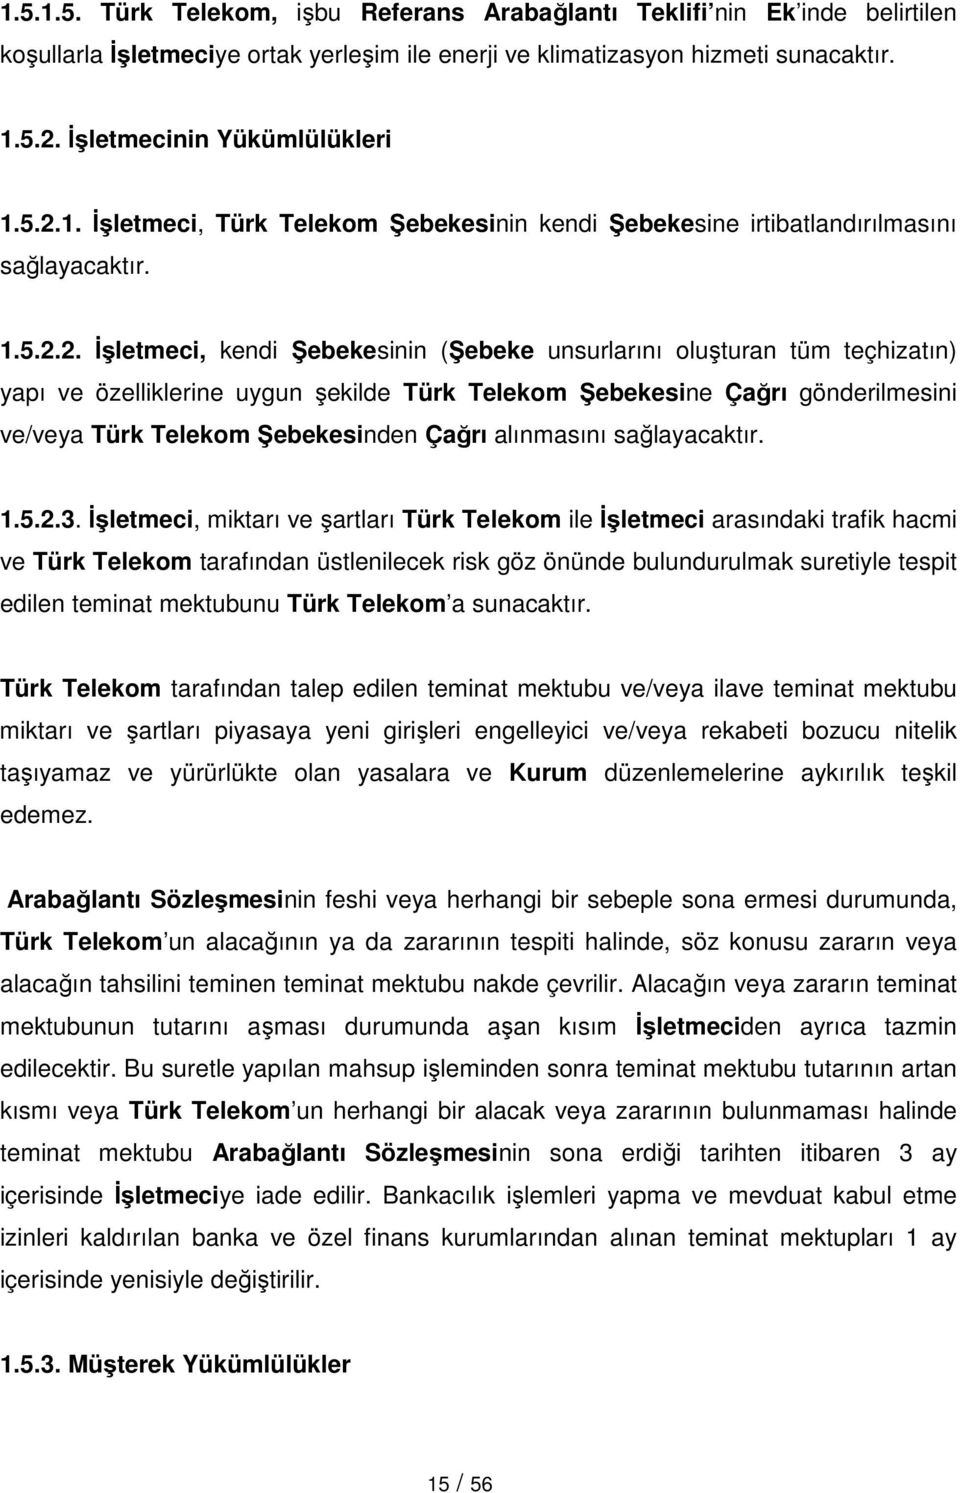 1. Đşletmeci, Türk Telekom Şebekesinin kendi Şebekesine irtibatlandırılmasını sağlayacaktır. 1.5.2.